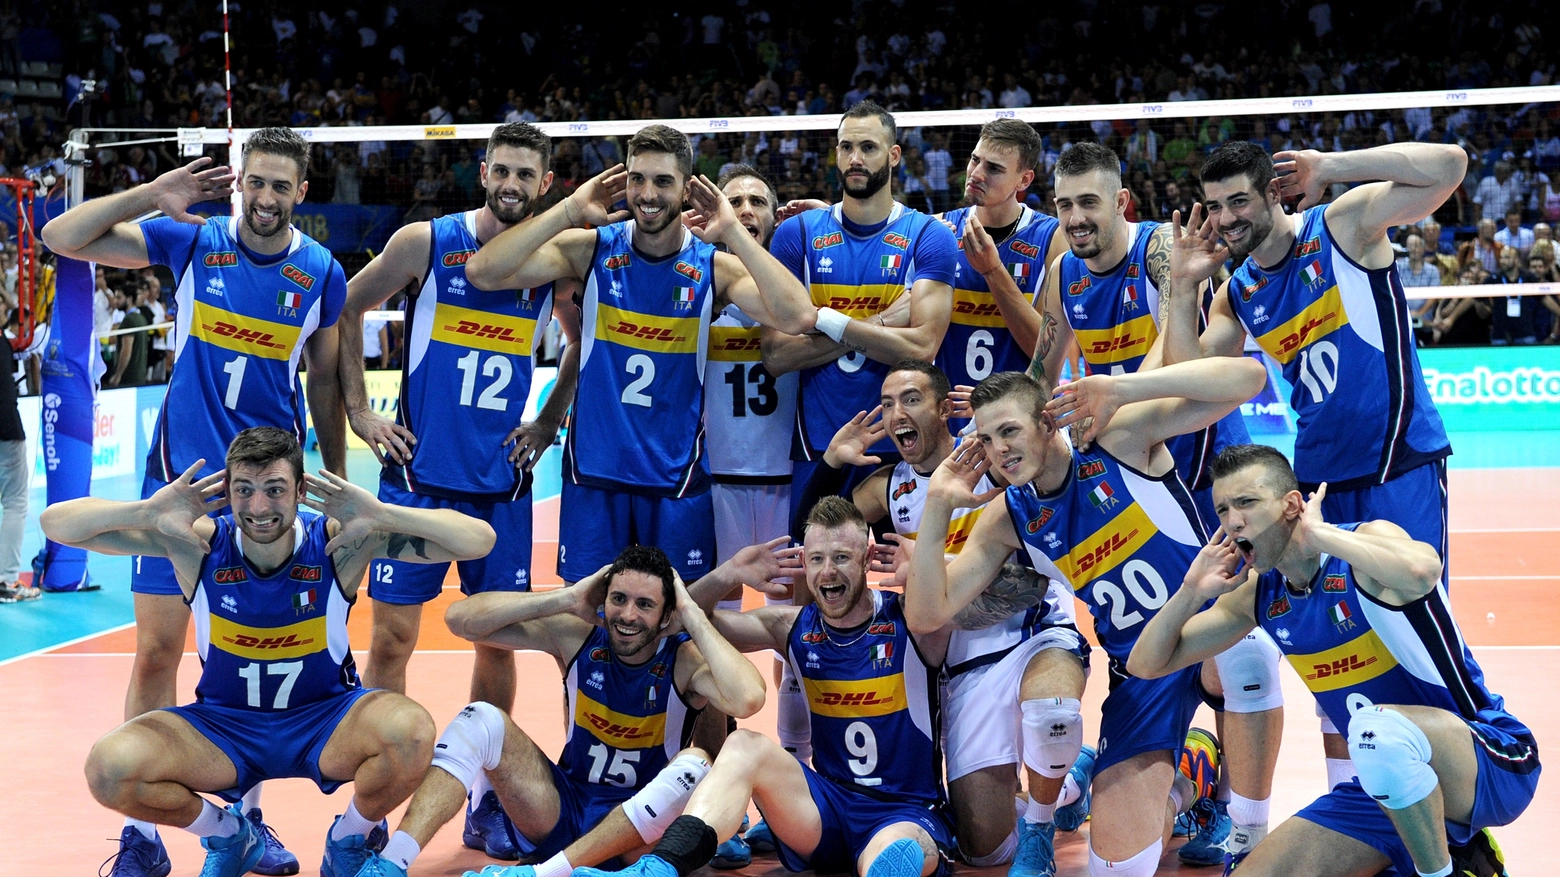 L'Italia ai mondiali di volley 2018 (LaPresse)